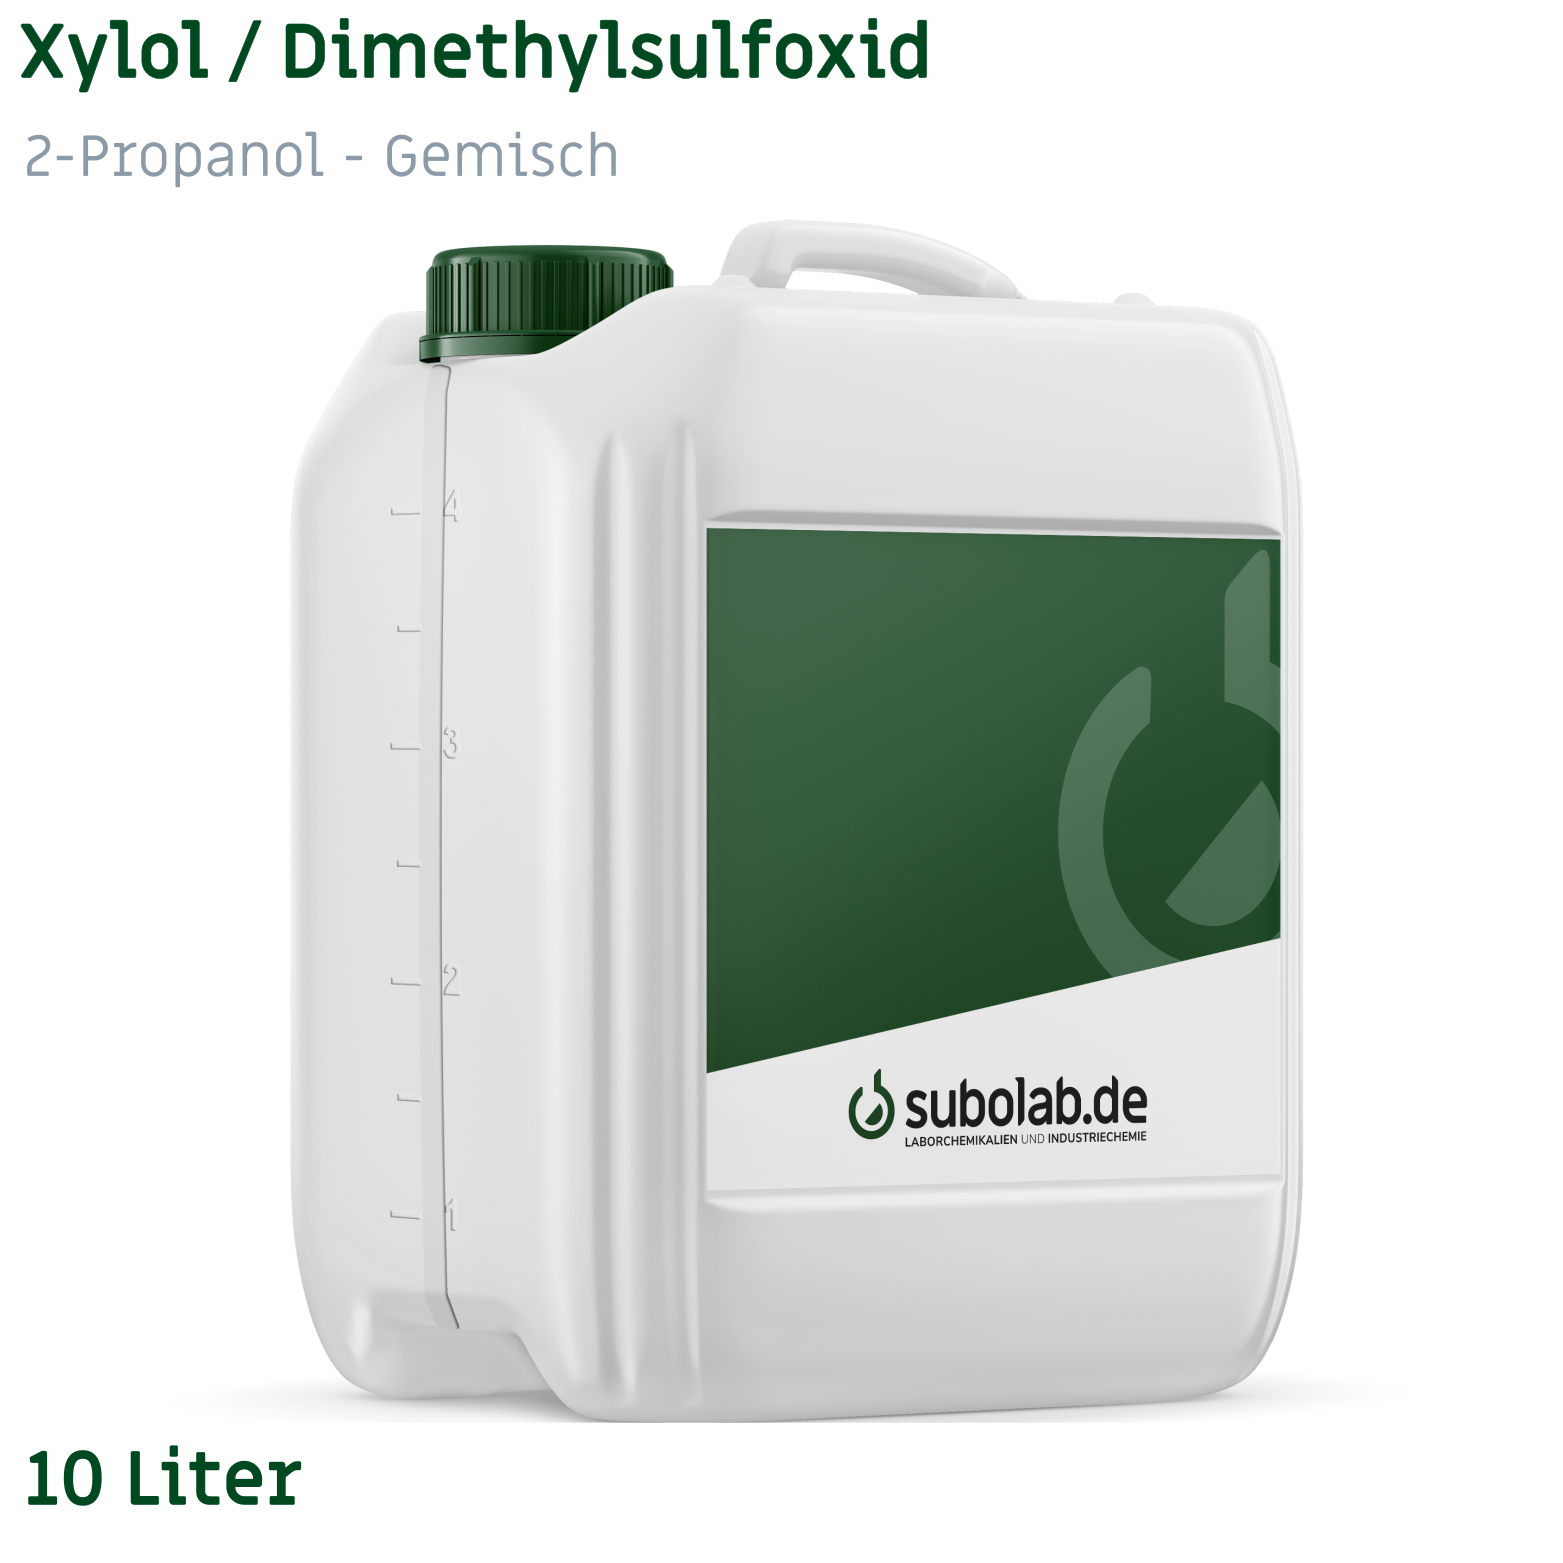 Bild von Xylol / Dimethylsulfoxid / 2-Propanol - Gemisch - volumetrisch - 7 : 1 : 8 (10 Liter)